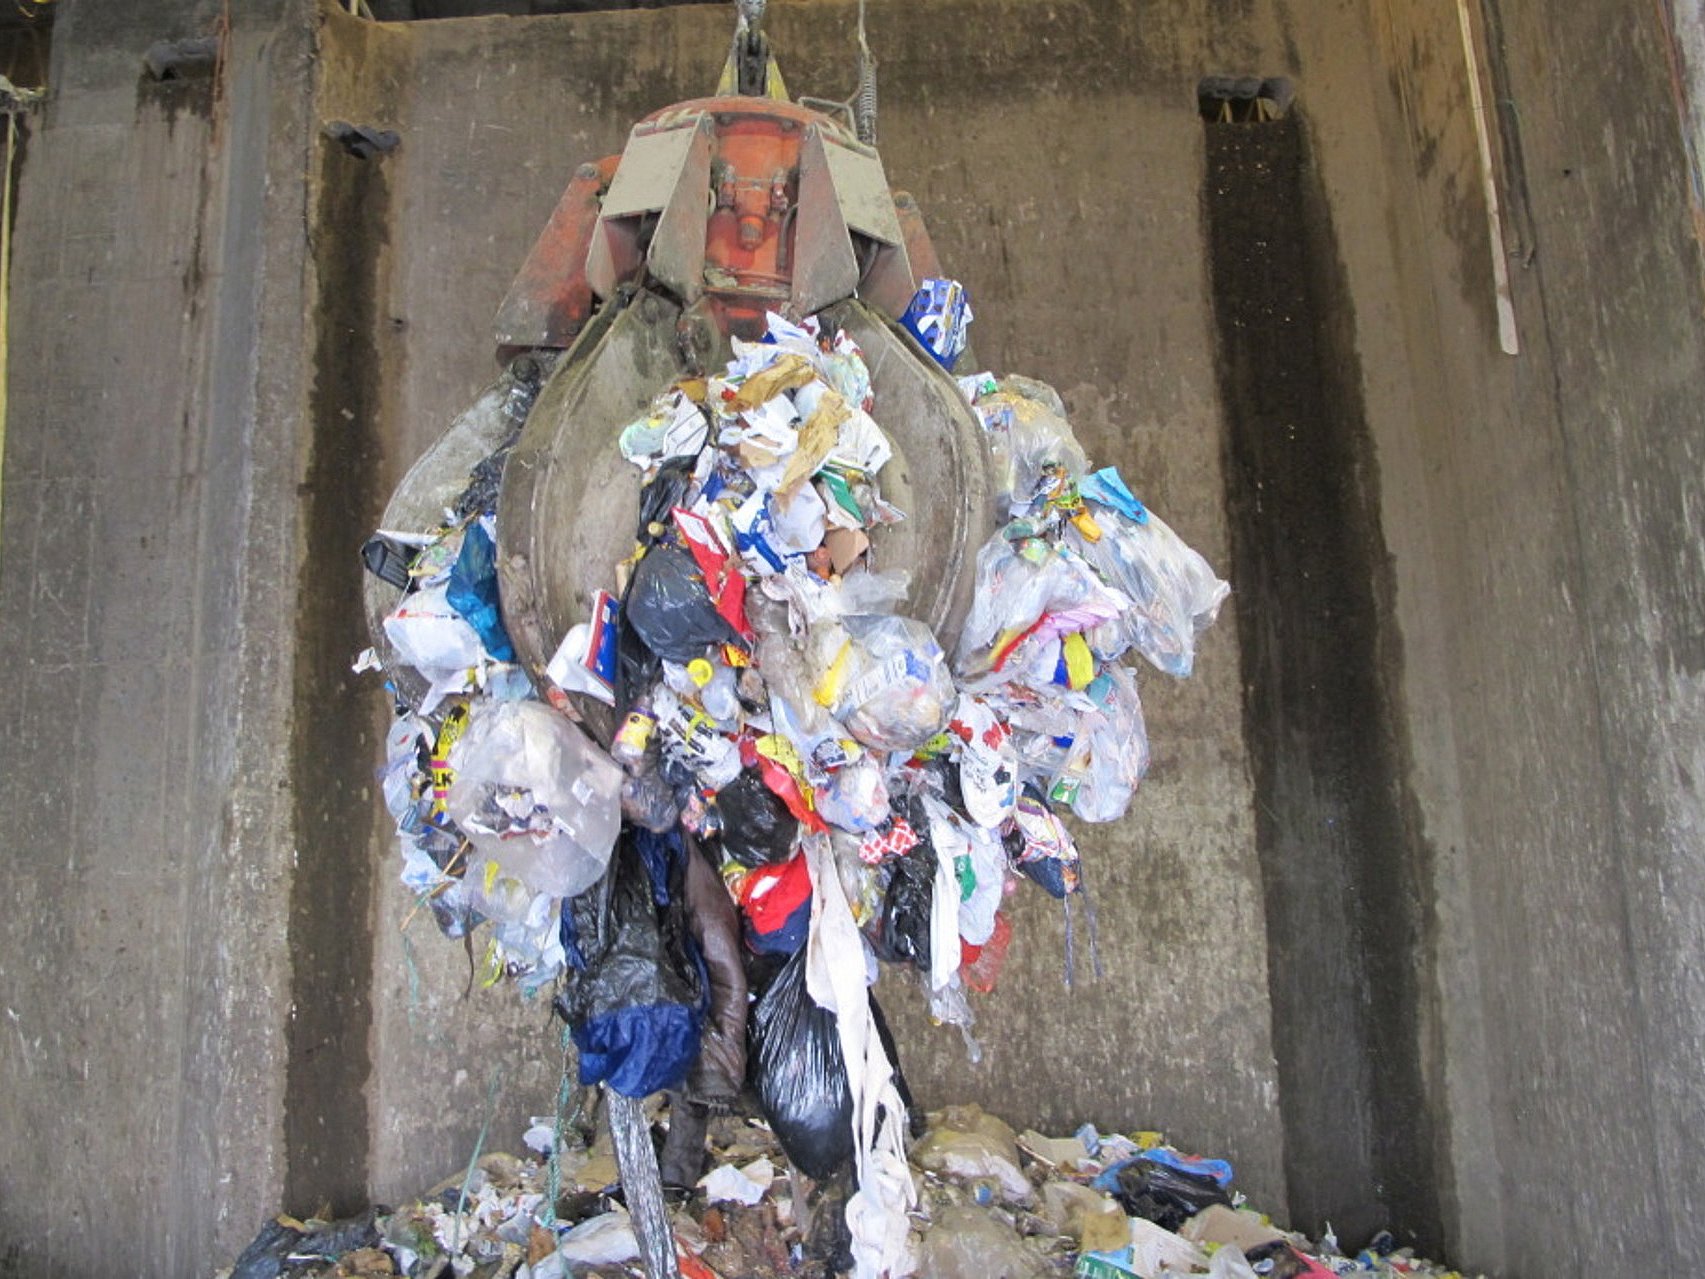 bekvemmelighed pulsåre lejlighed Farvede affaldsposer er vejen frem for miljøet | TV 2 Kosmopol